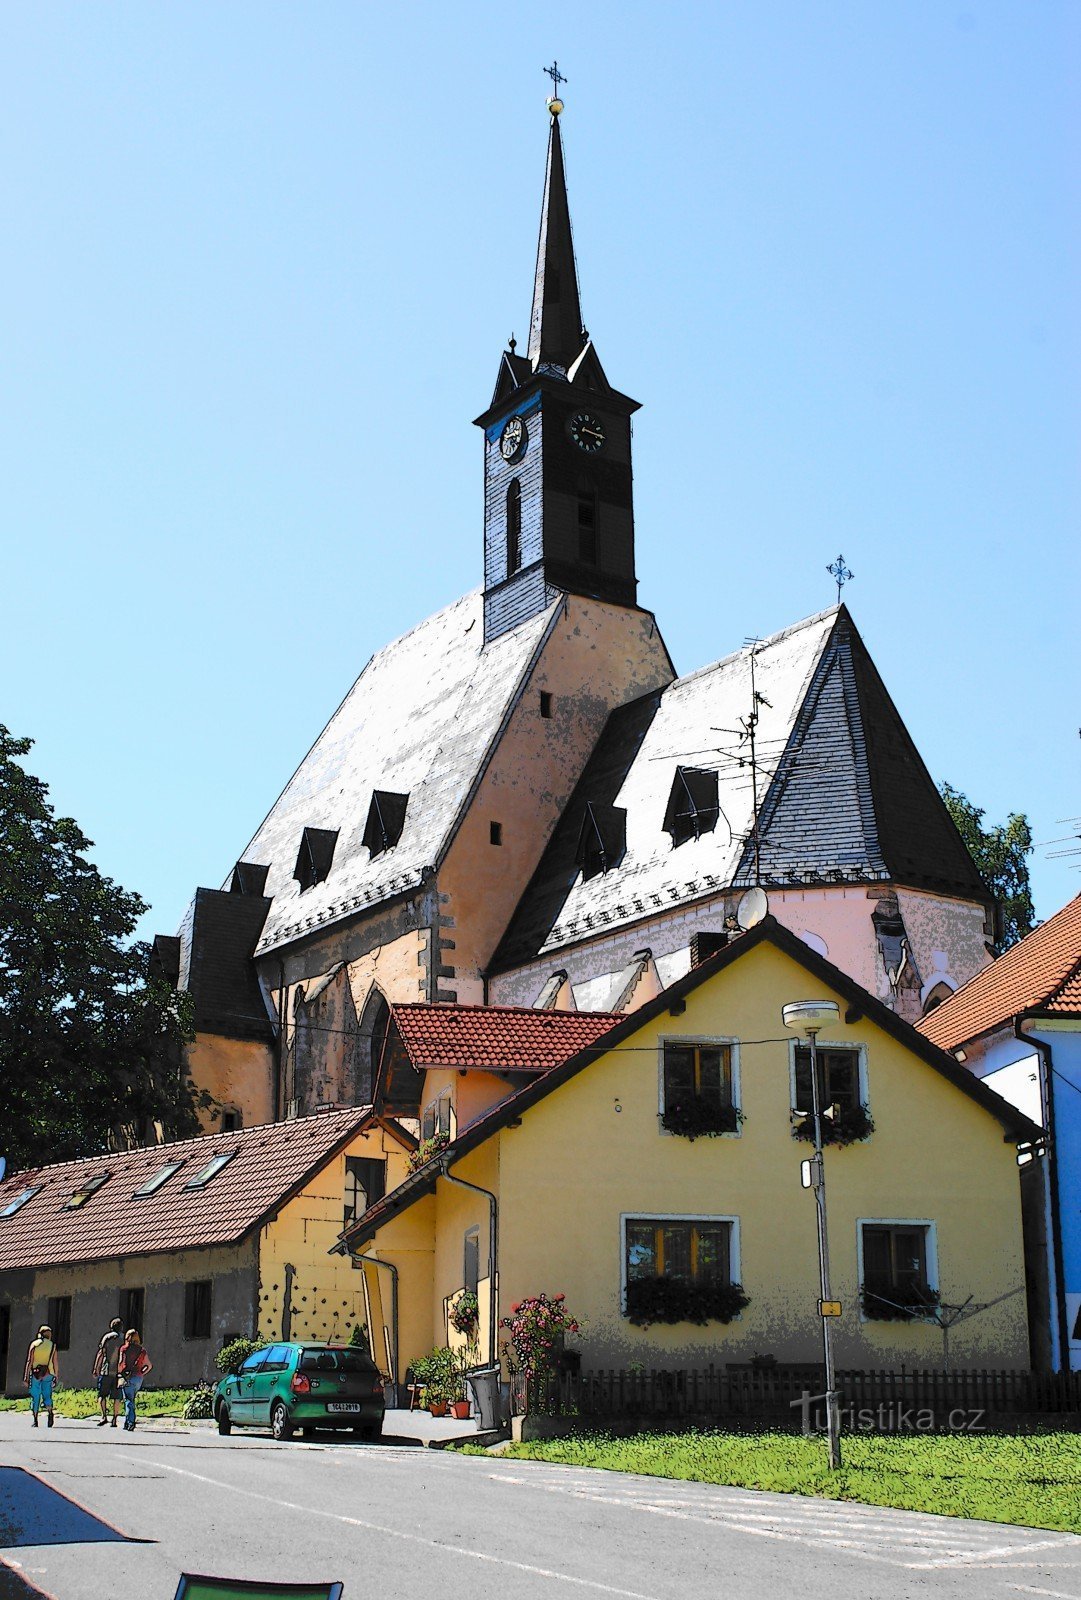 Dolní Dvořiště – church of St. Lily